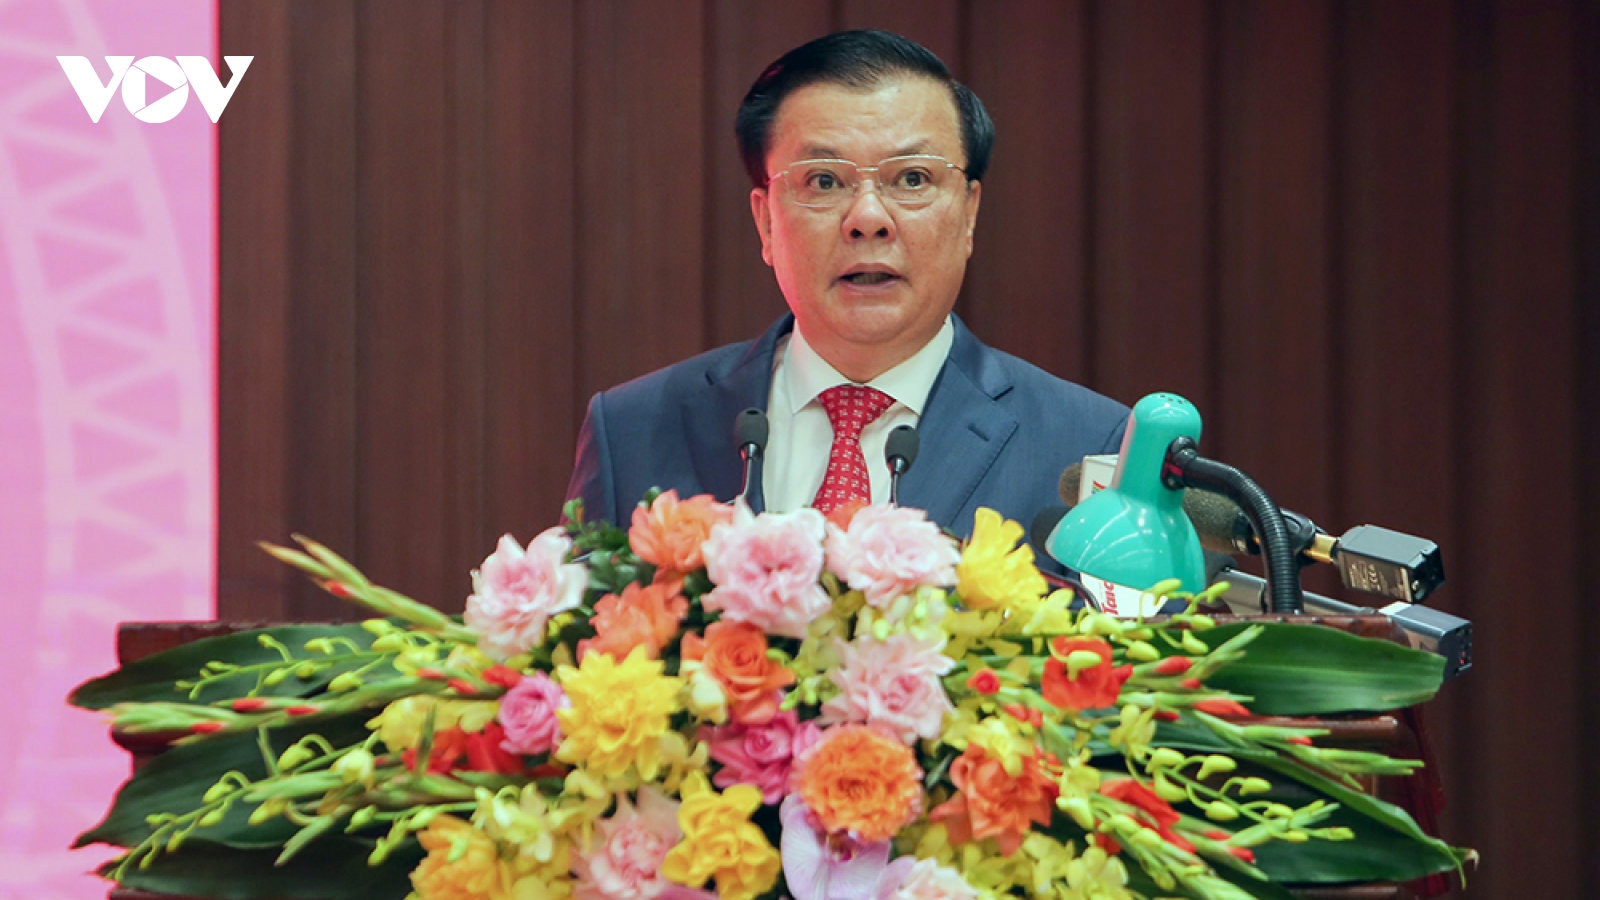 Thành ủy Hà Nội giới thiệu chữ ký của tân Bí thư Đinh Tiến Dũng